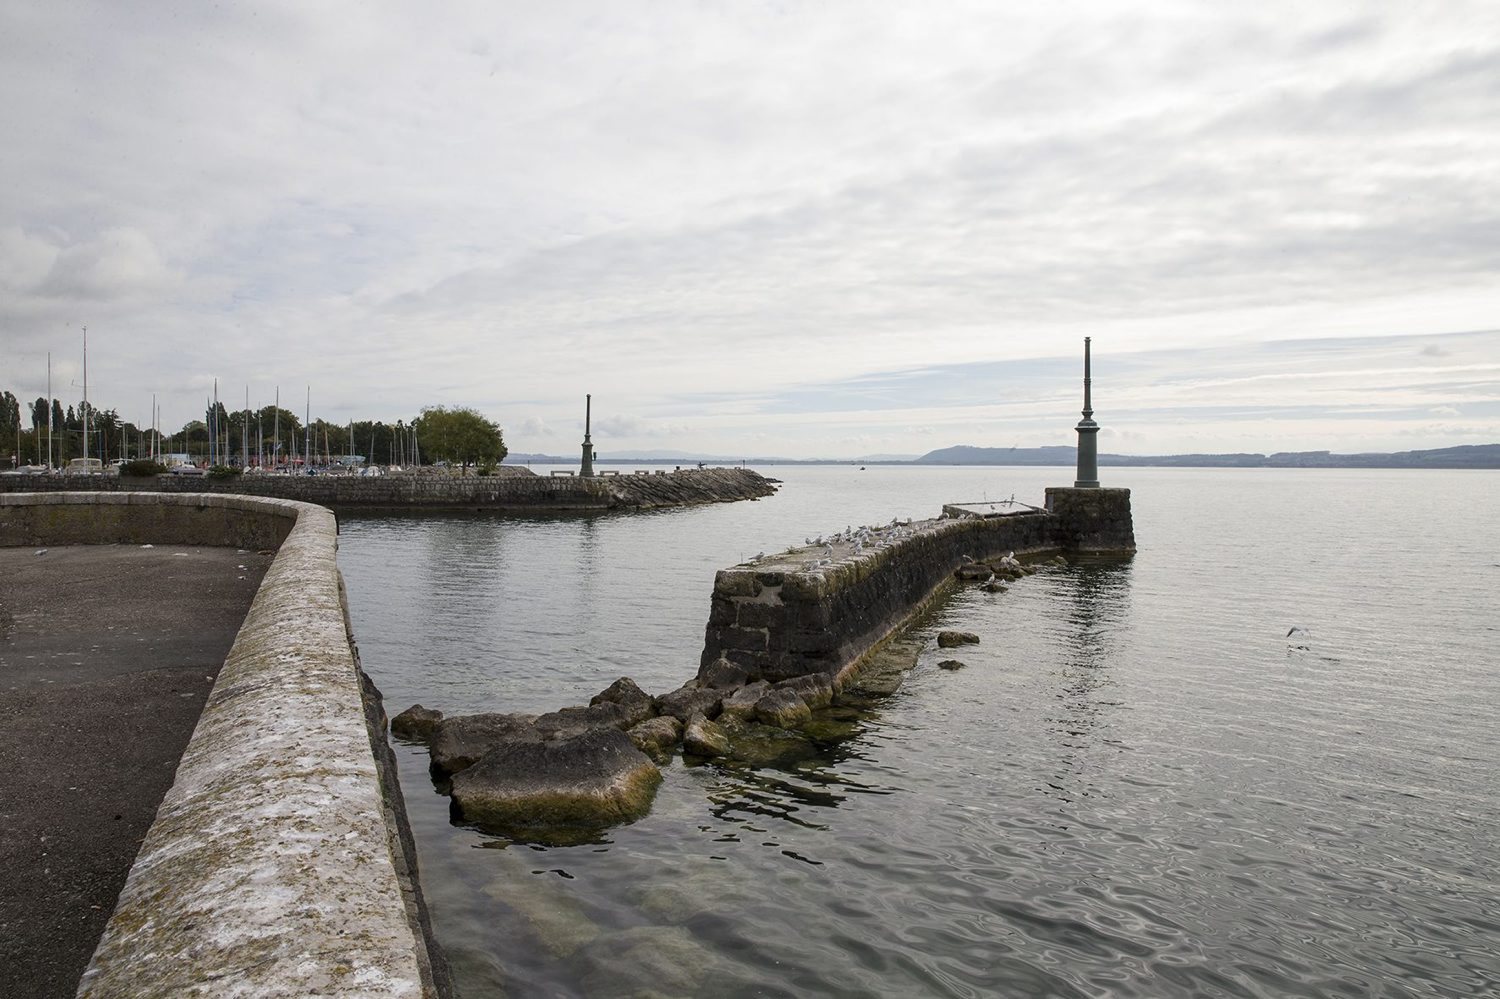 Le môle sud-ouest du port de Neuchâtel, tel qu'il se présentait avant les travaux urgents.